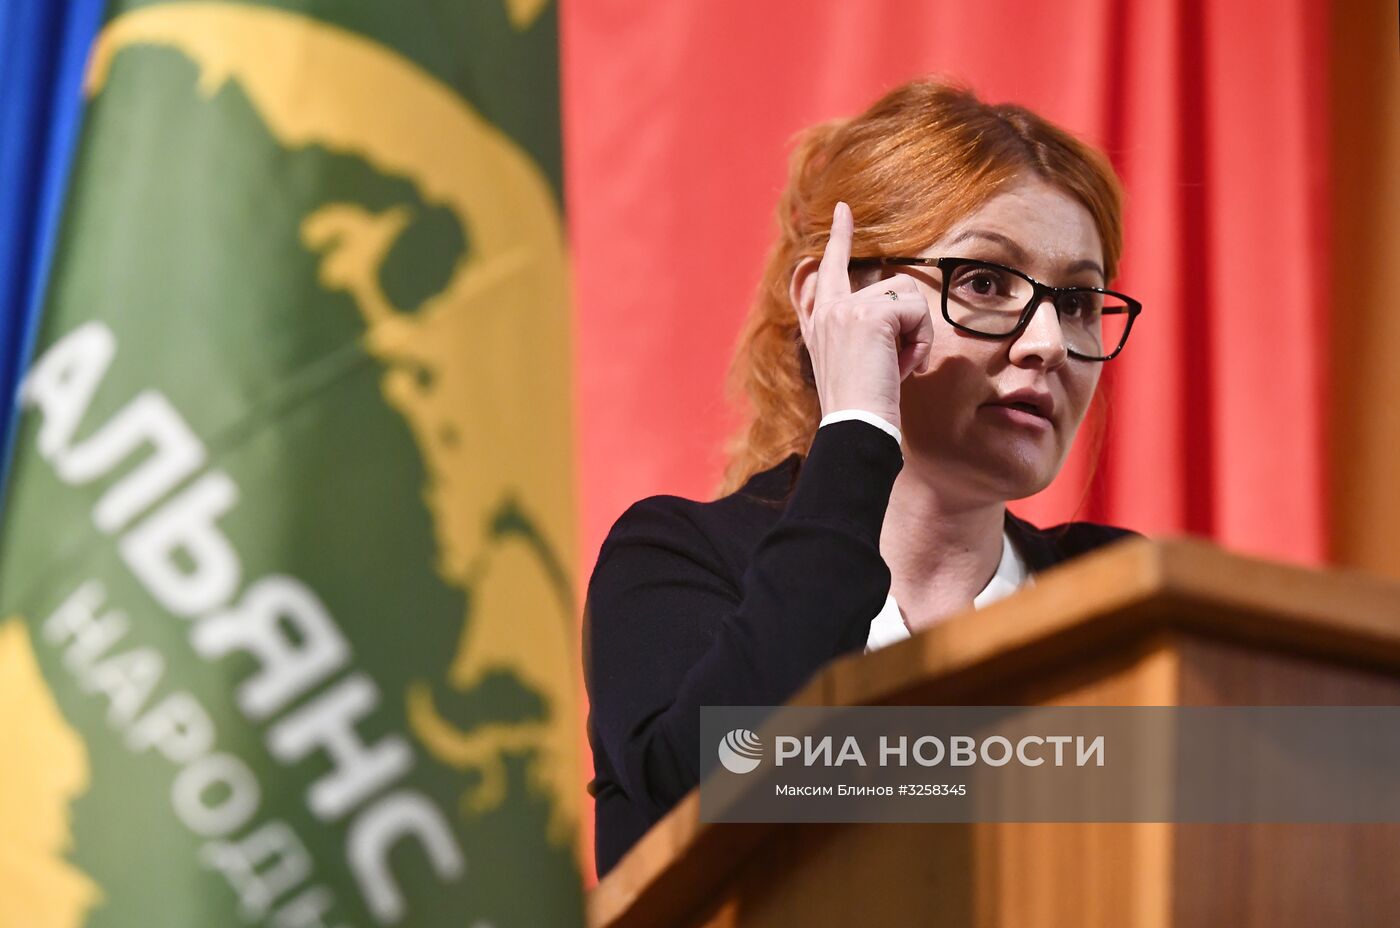 Съезд политической партии "Альянс зеленых"